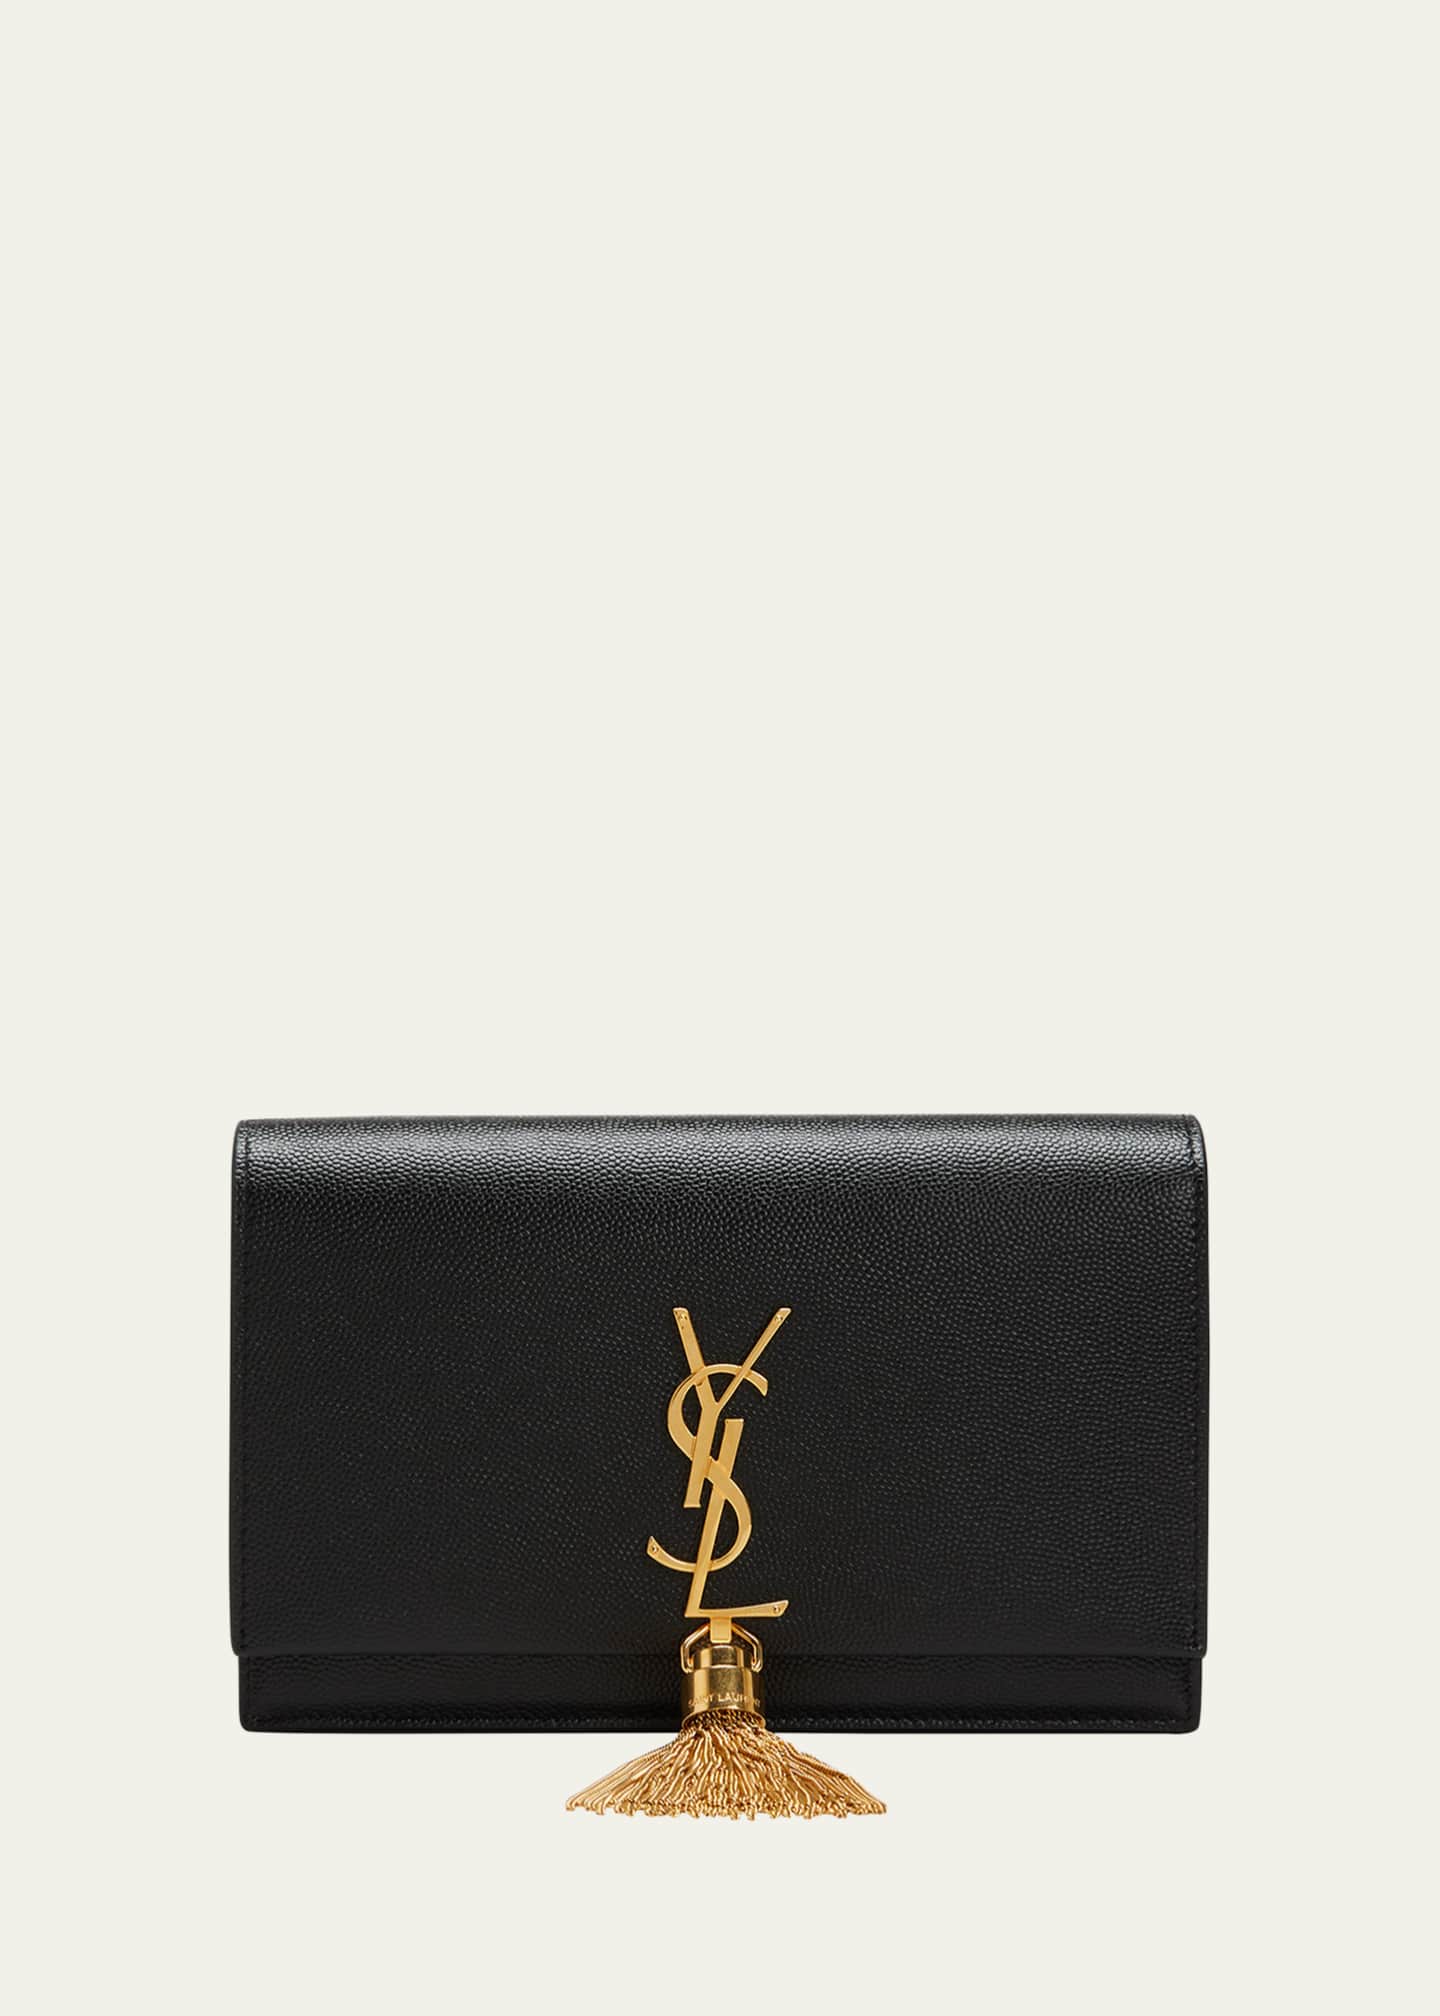 Saint Laurent Monogramme YSL Grain de Poudre Leather Wallet on Chain